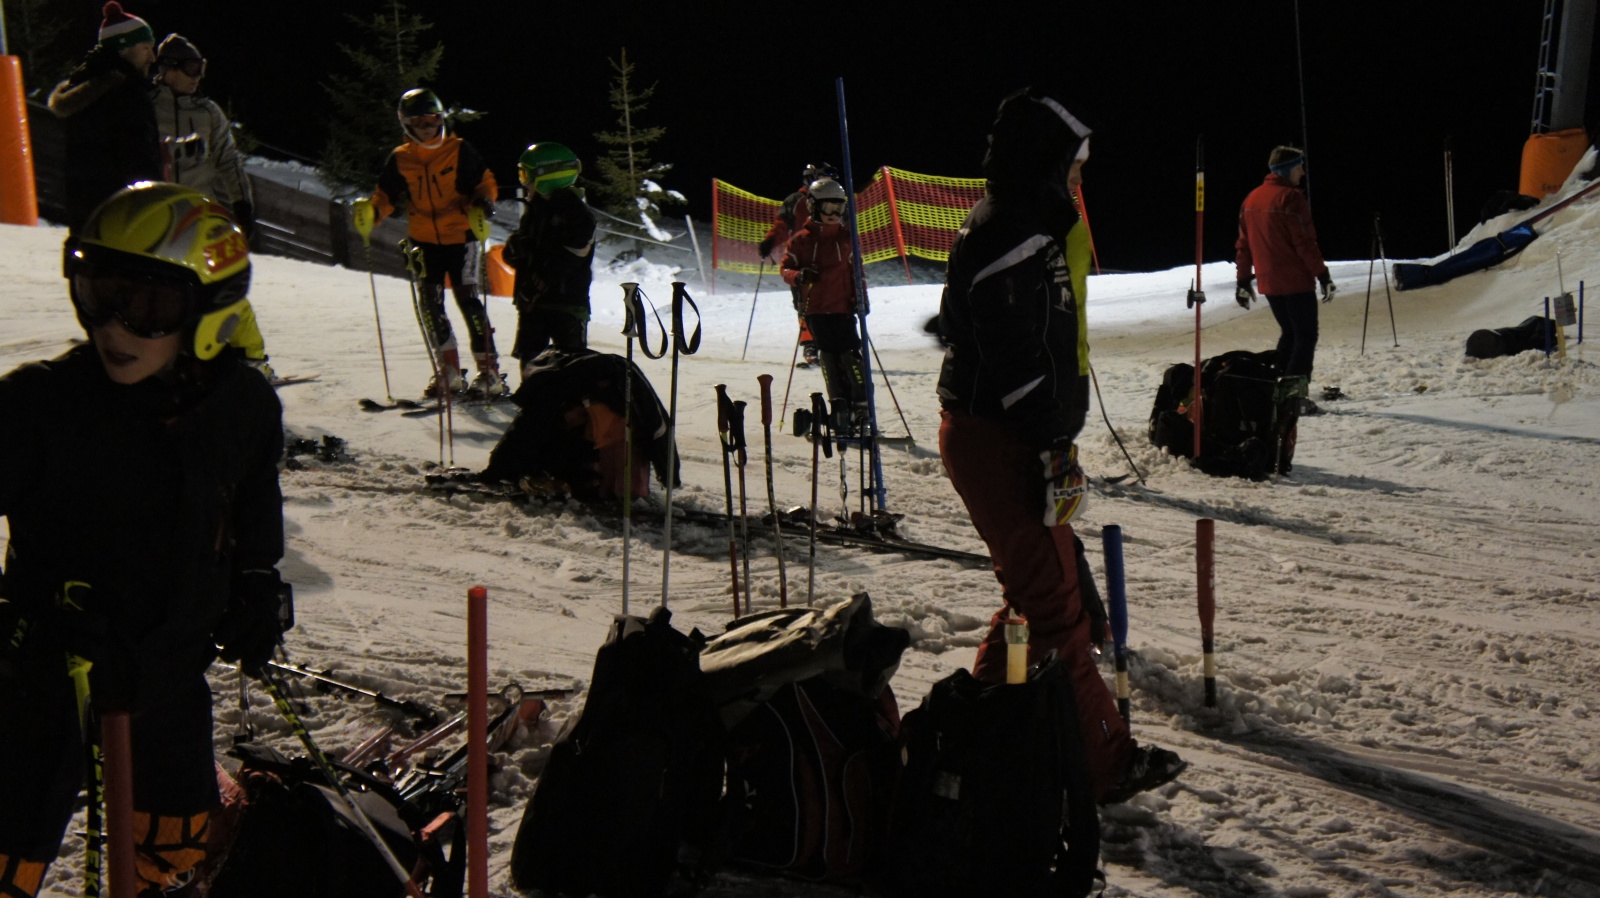 Extra Night Slalom edzés volt a Síparkban!